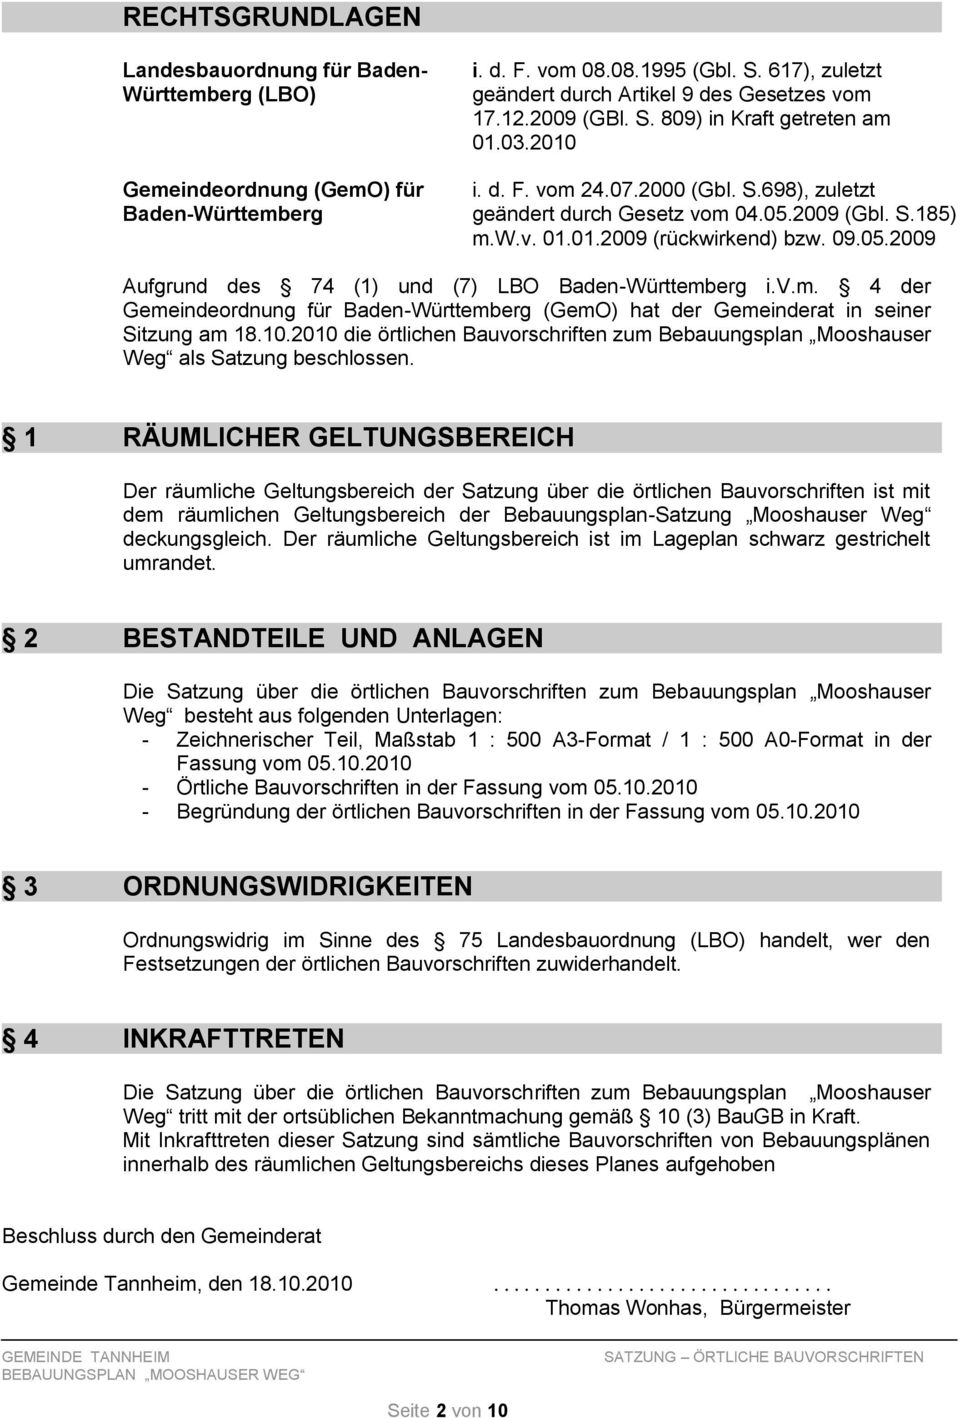 v.m. 4 der Gemeindeordnung für Baden-Württemberg (GemO) hat der Gemeinderat in seiner Sitzung am 18.10.2010 die örtlichen Bauvorschriften zum Bebauungsplan Mooshauser Weg als Satzung beschlossen.